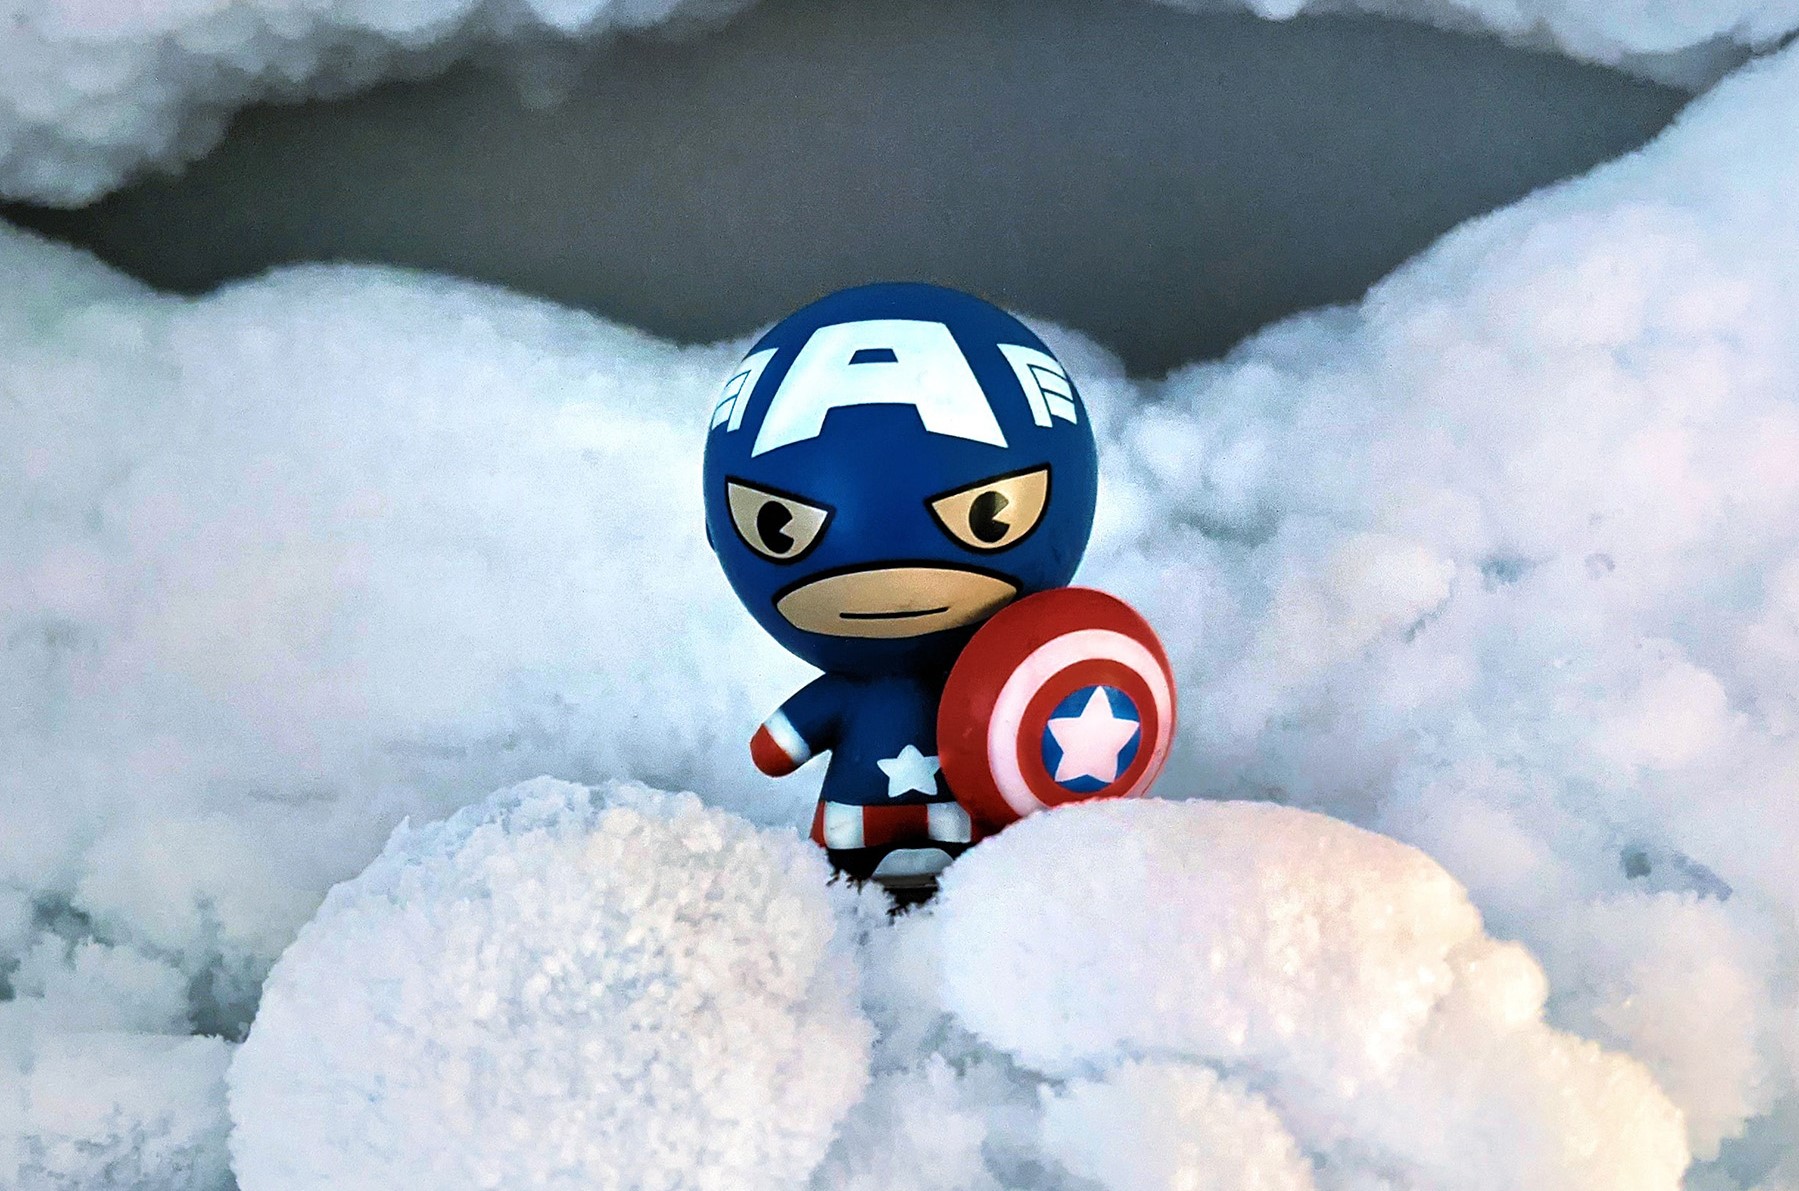 Figur im Schnee, Heldenfigur, rot-blauer Avenger mit Schutzschild im Schnee, Kampf gegen die Kälte, Schneebeseitigung, Winterdienst